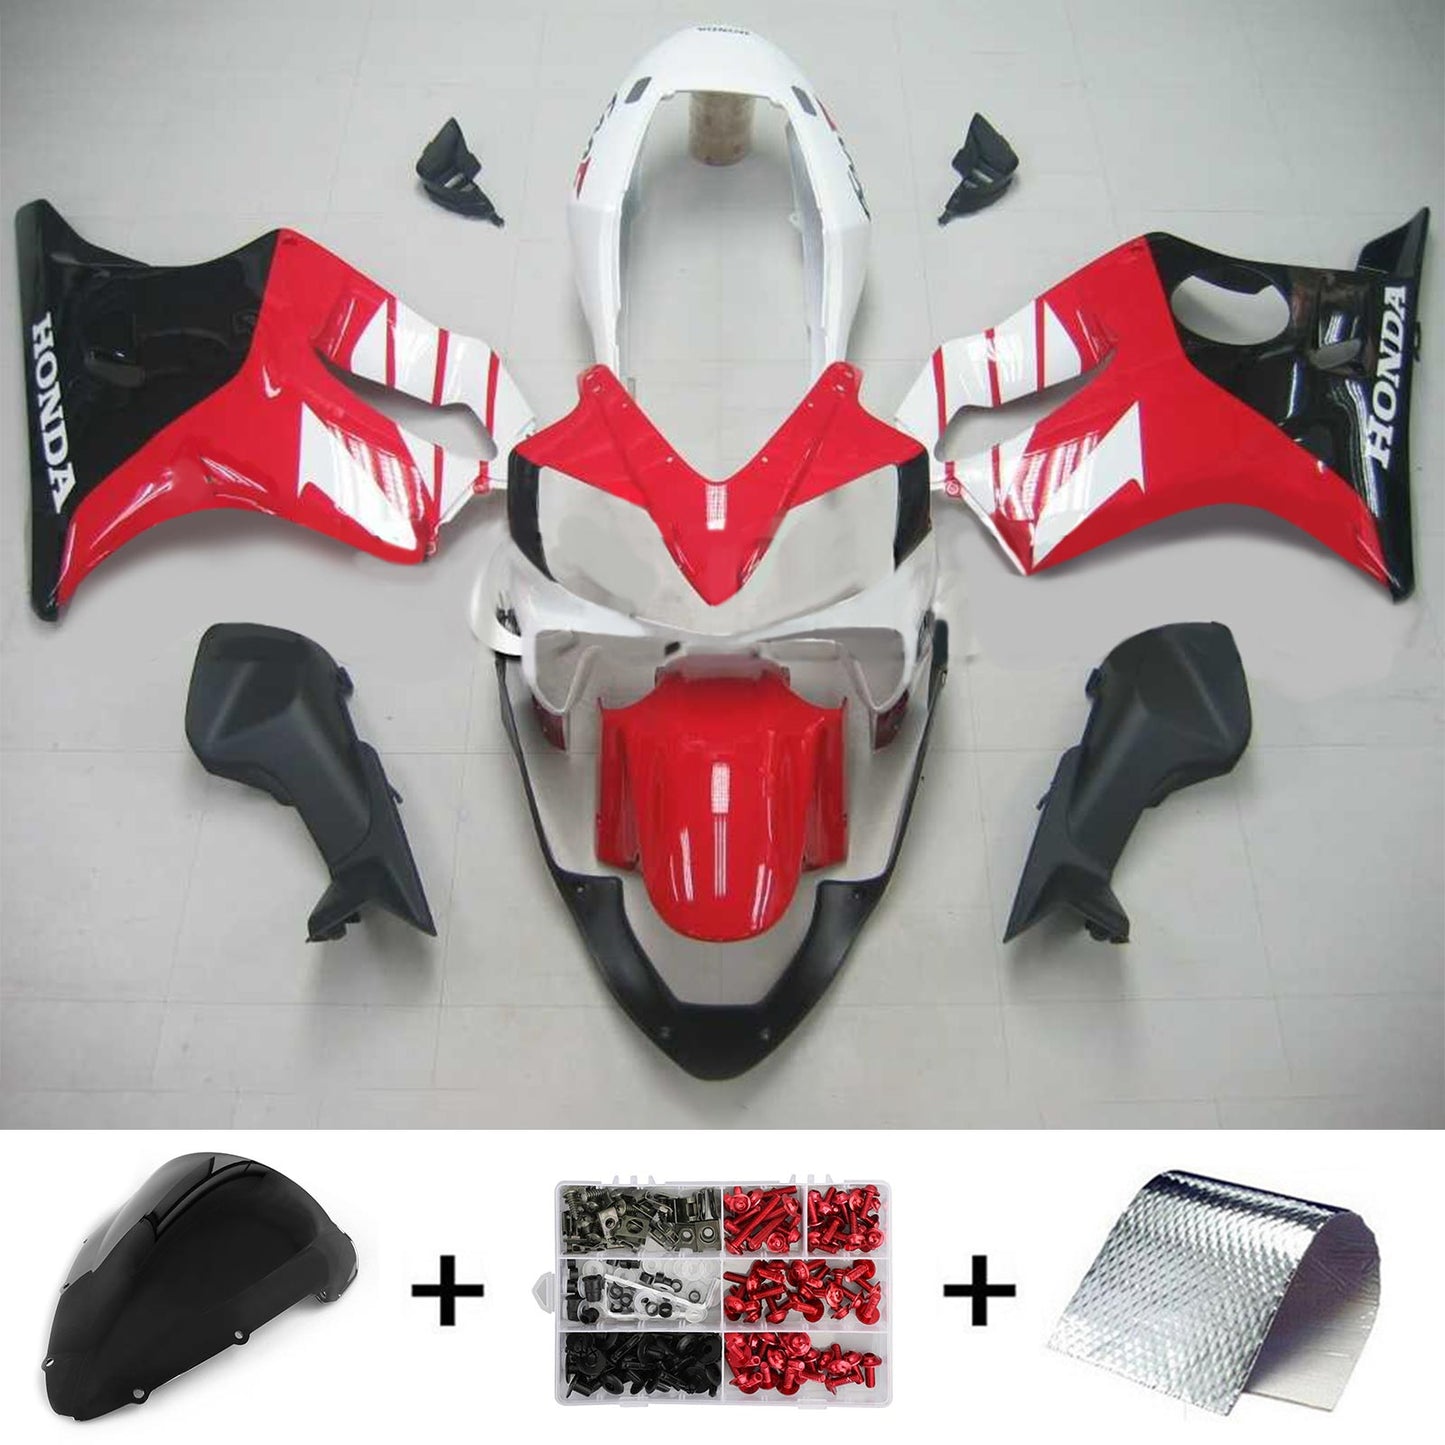 2004-2007 Honda CBR600 F4i Amotopart Injection Fairing Kit Bodywork Plastic ABS #119